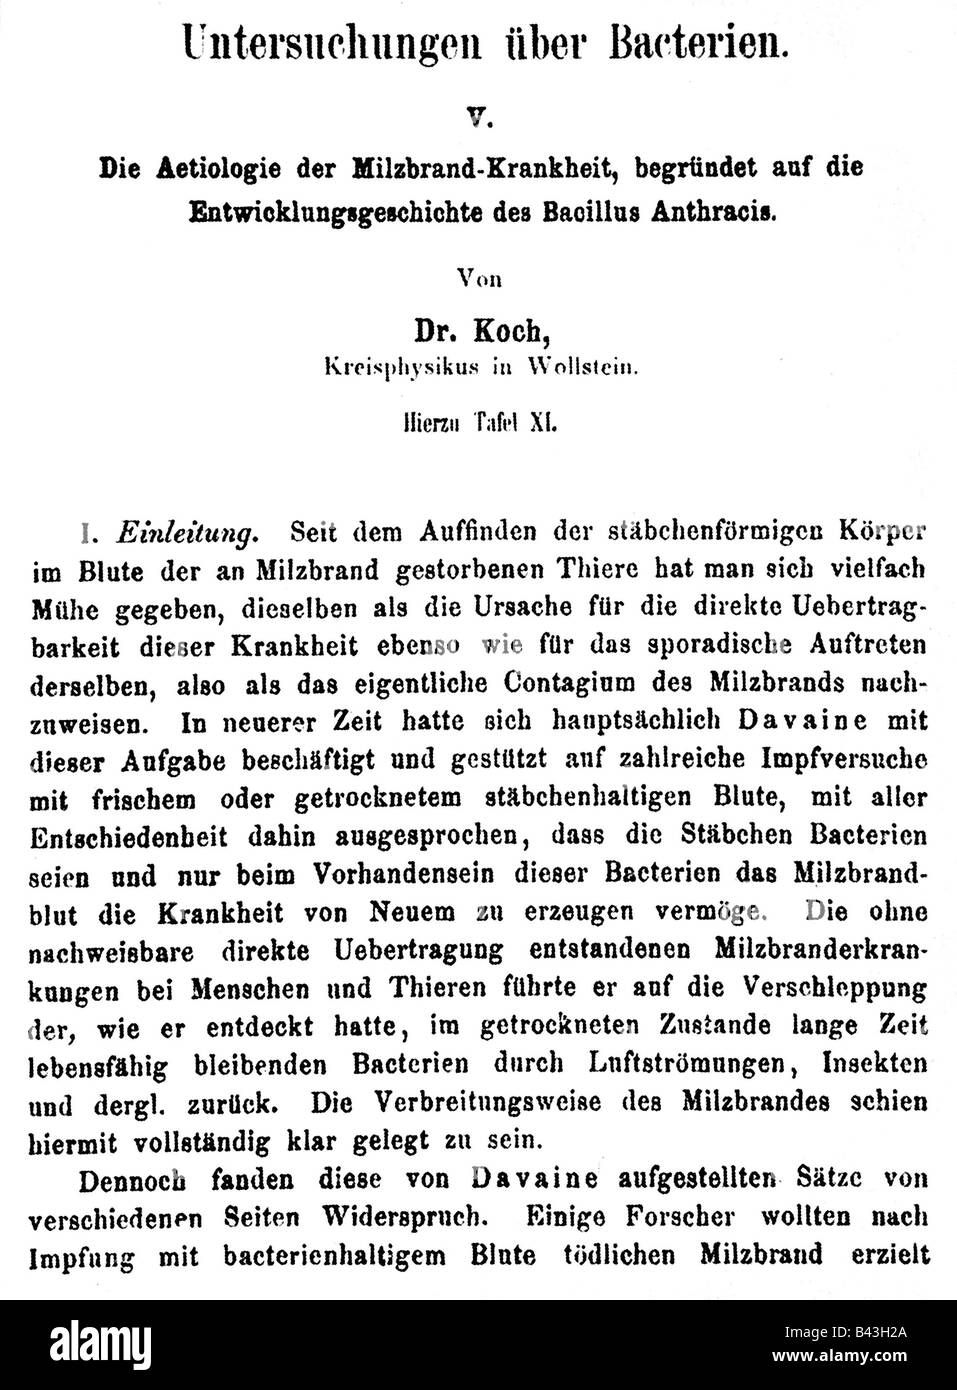 Koch, Robert, 11.12.1843 - 27.5.1910, German scientist (medic), essay about anthrax, journal 'Beitraege zur Bilogie der Pflanzen', 1876, Stock Photo